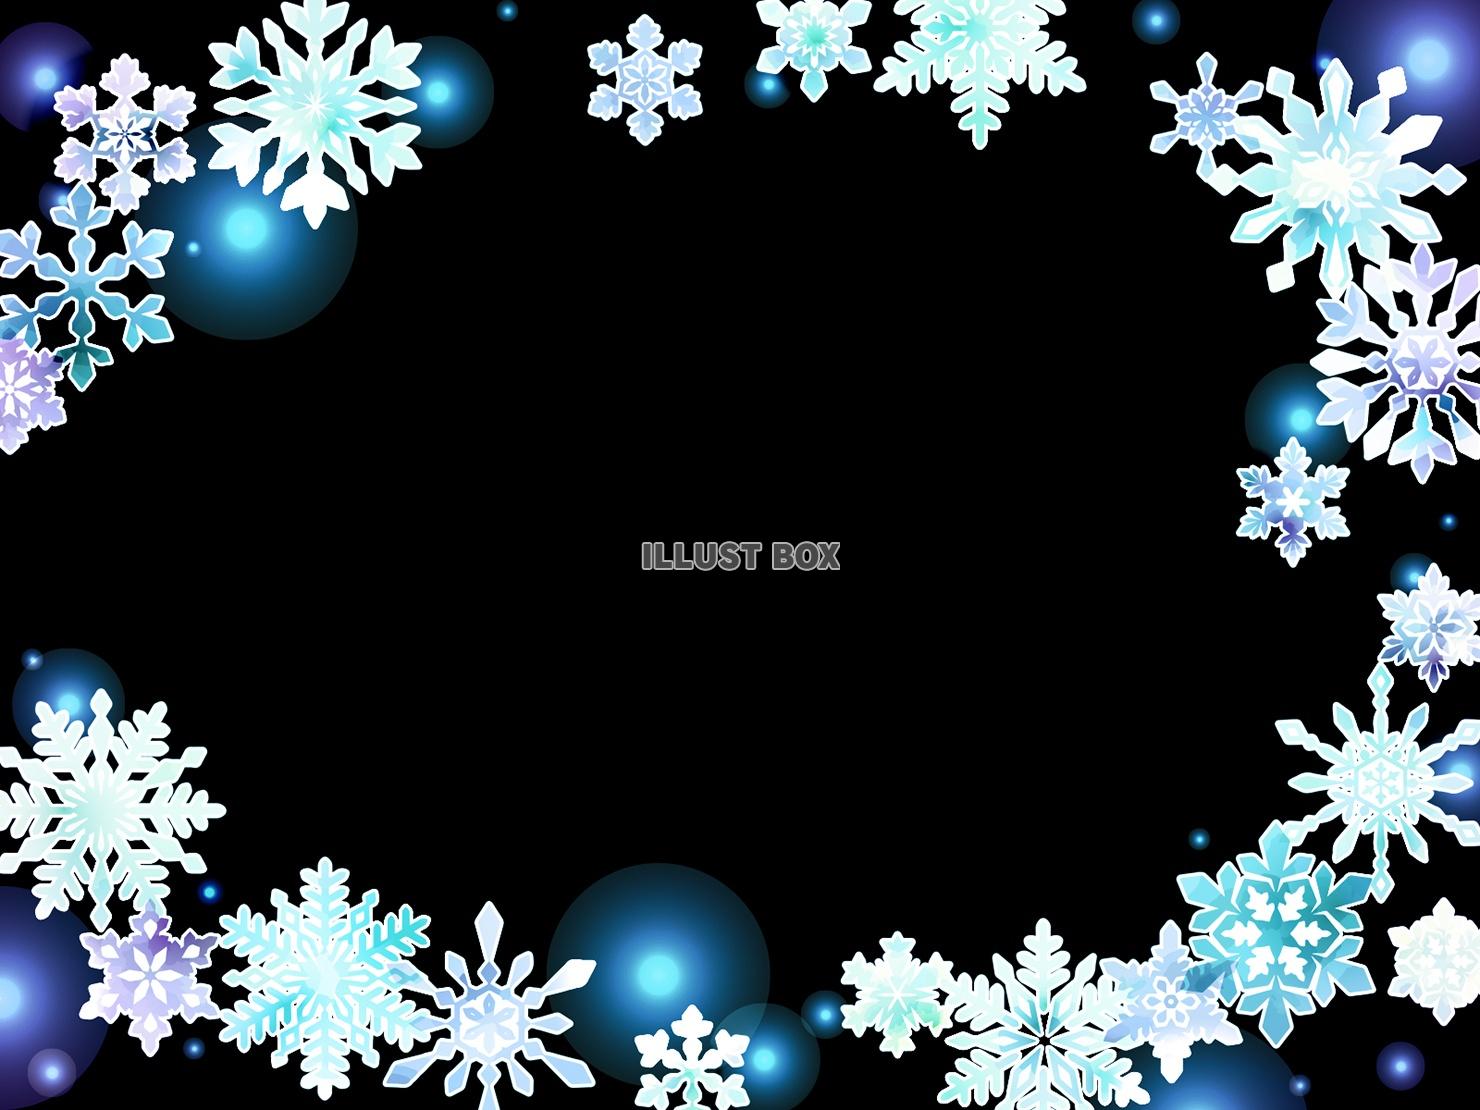 雪の結晶のイラストフレーム、黒背景